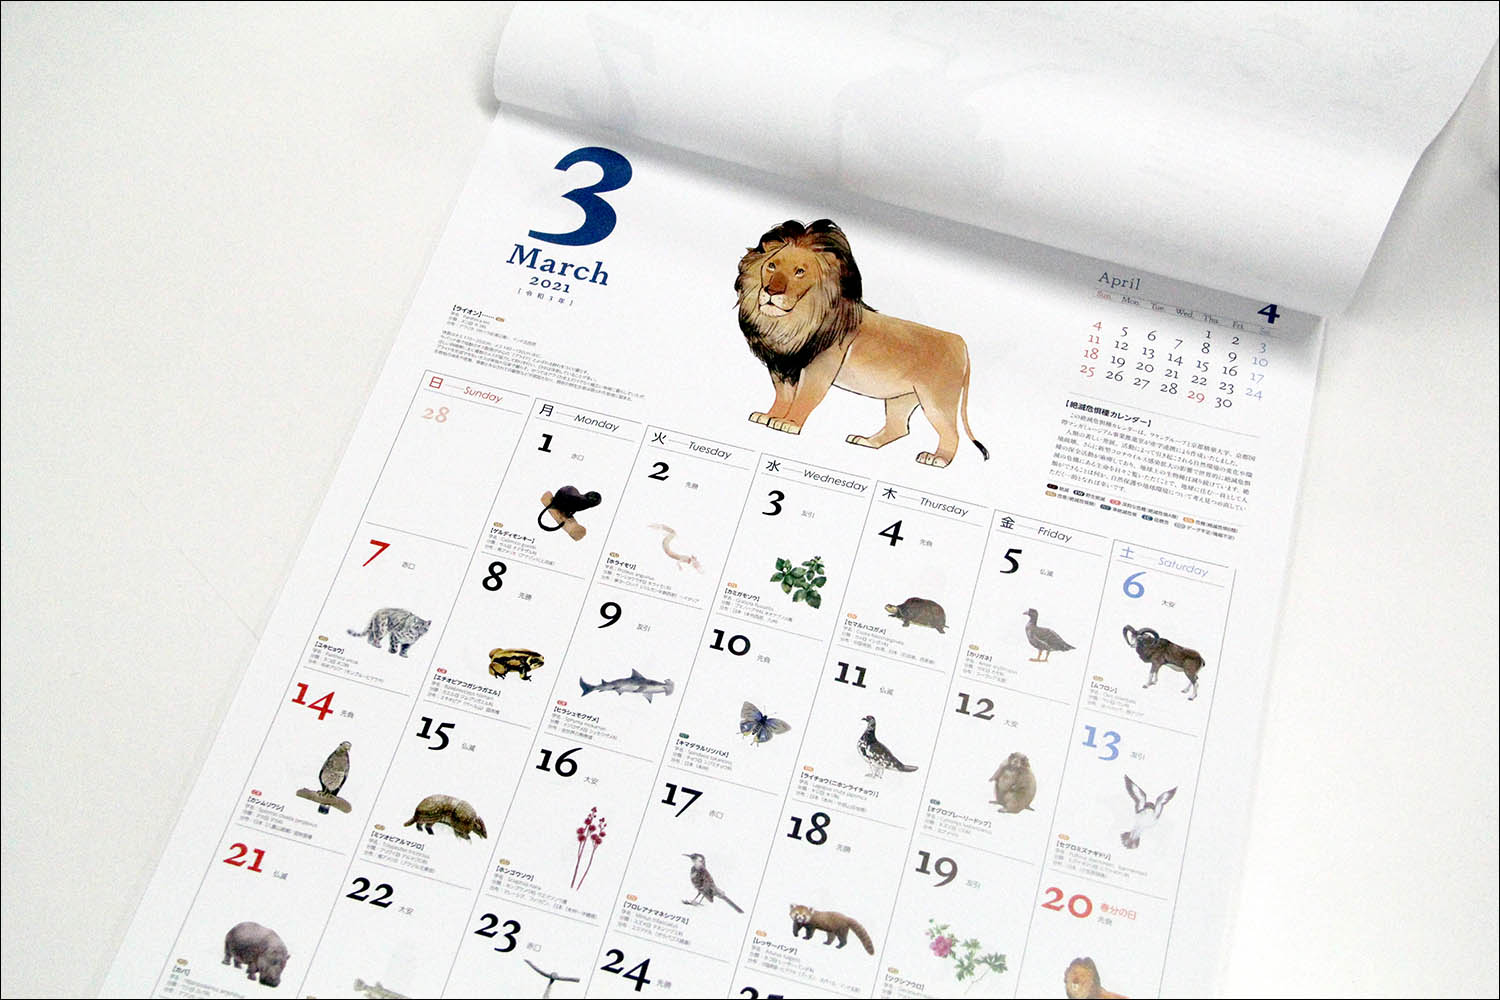 マンガ学部在学生が ワケングループ21年度カレンダーの挿絵を制作 365日すべての日付に 絶滅危惧種に指定された動植物のイラストを掲載 京都精華大学